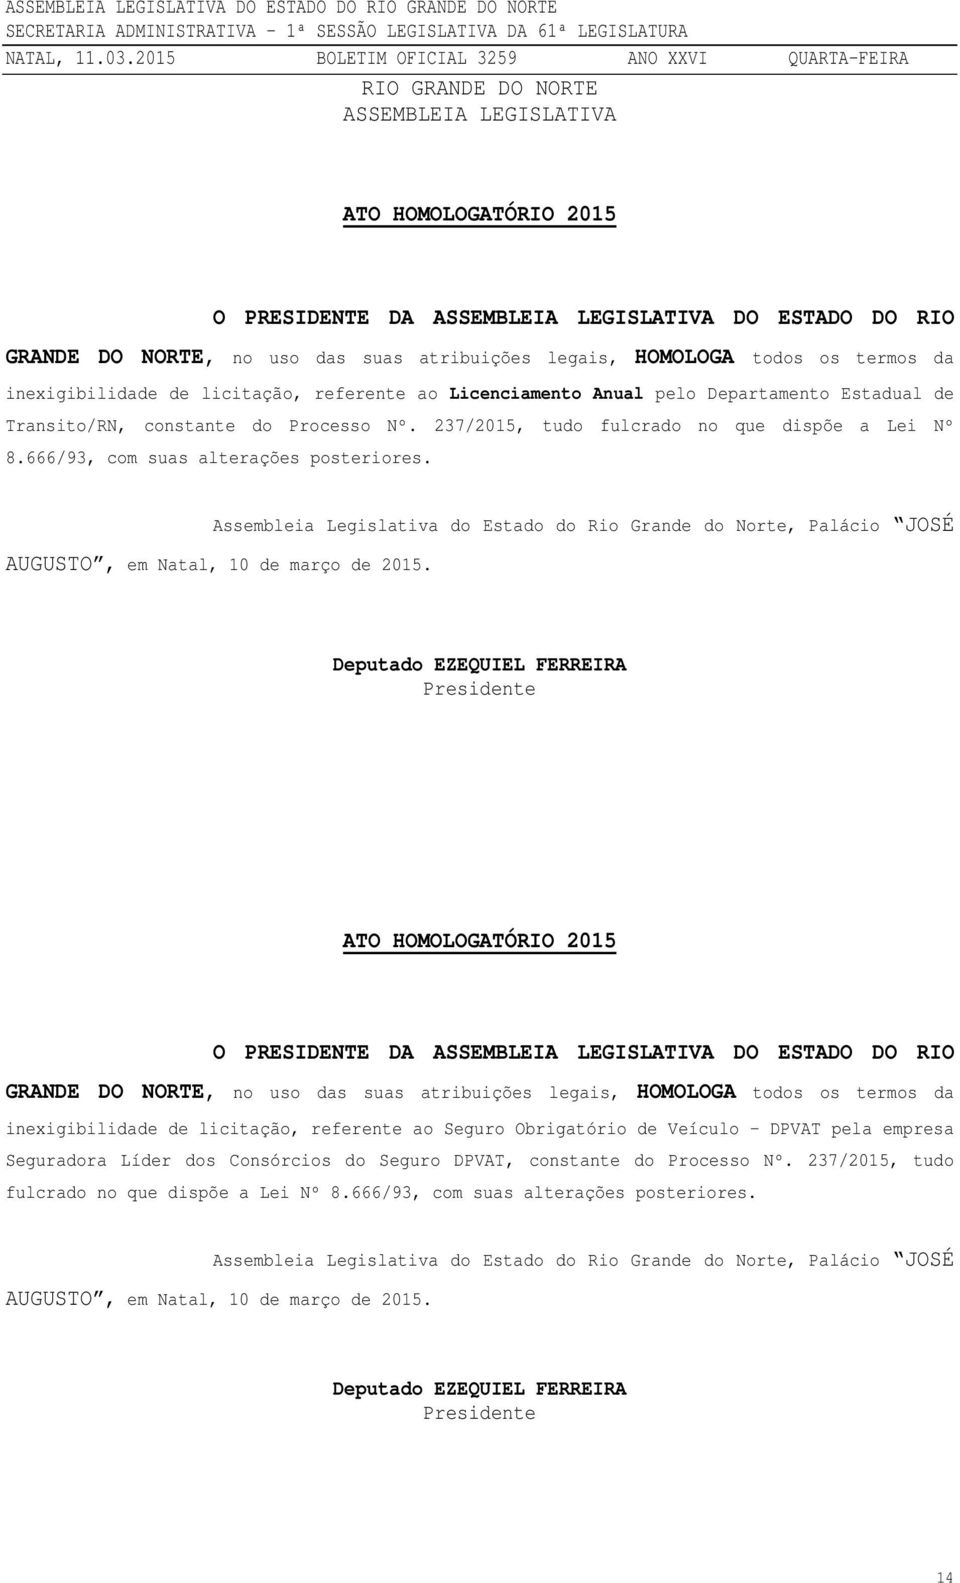 666/93, com suas alterações posteriores. Assembleia Legislativa do Estado do Rio Grande do Norte, Palácio JOSÉ AUGUSTO, em Natal, 10 de março de 2015.